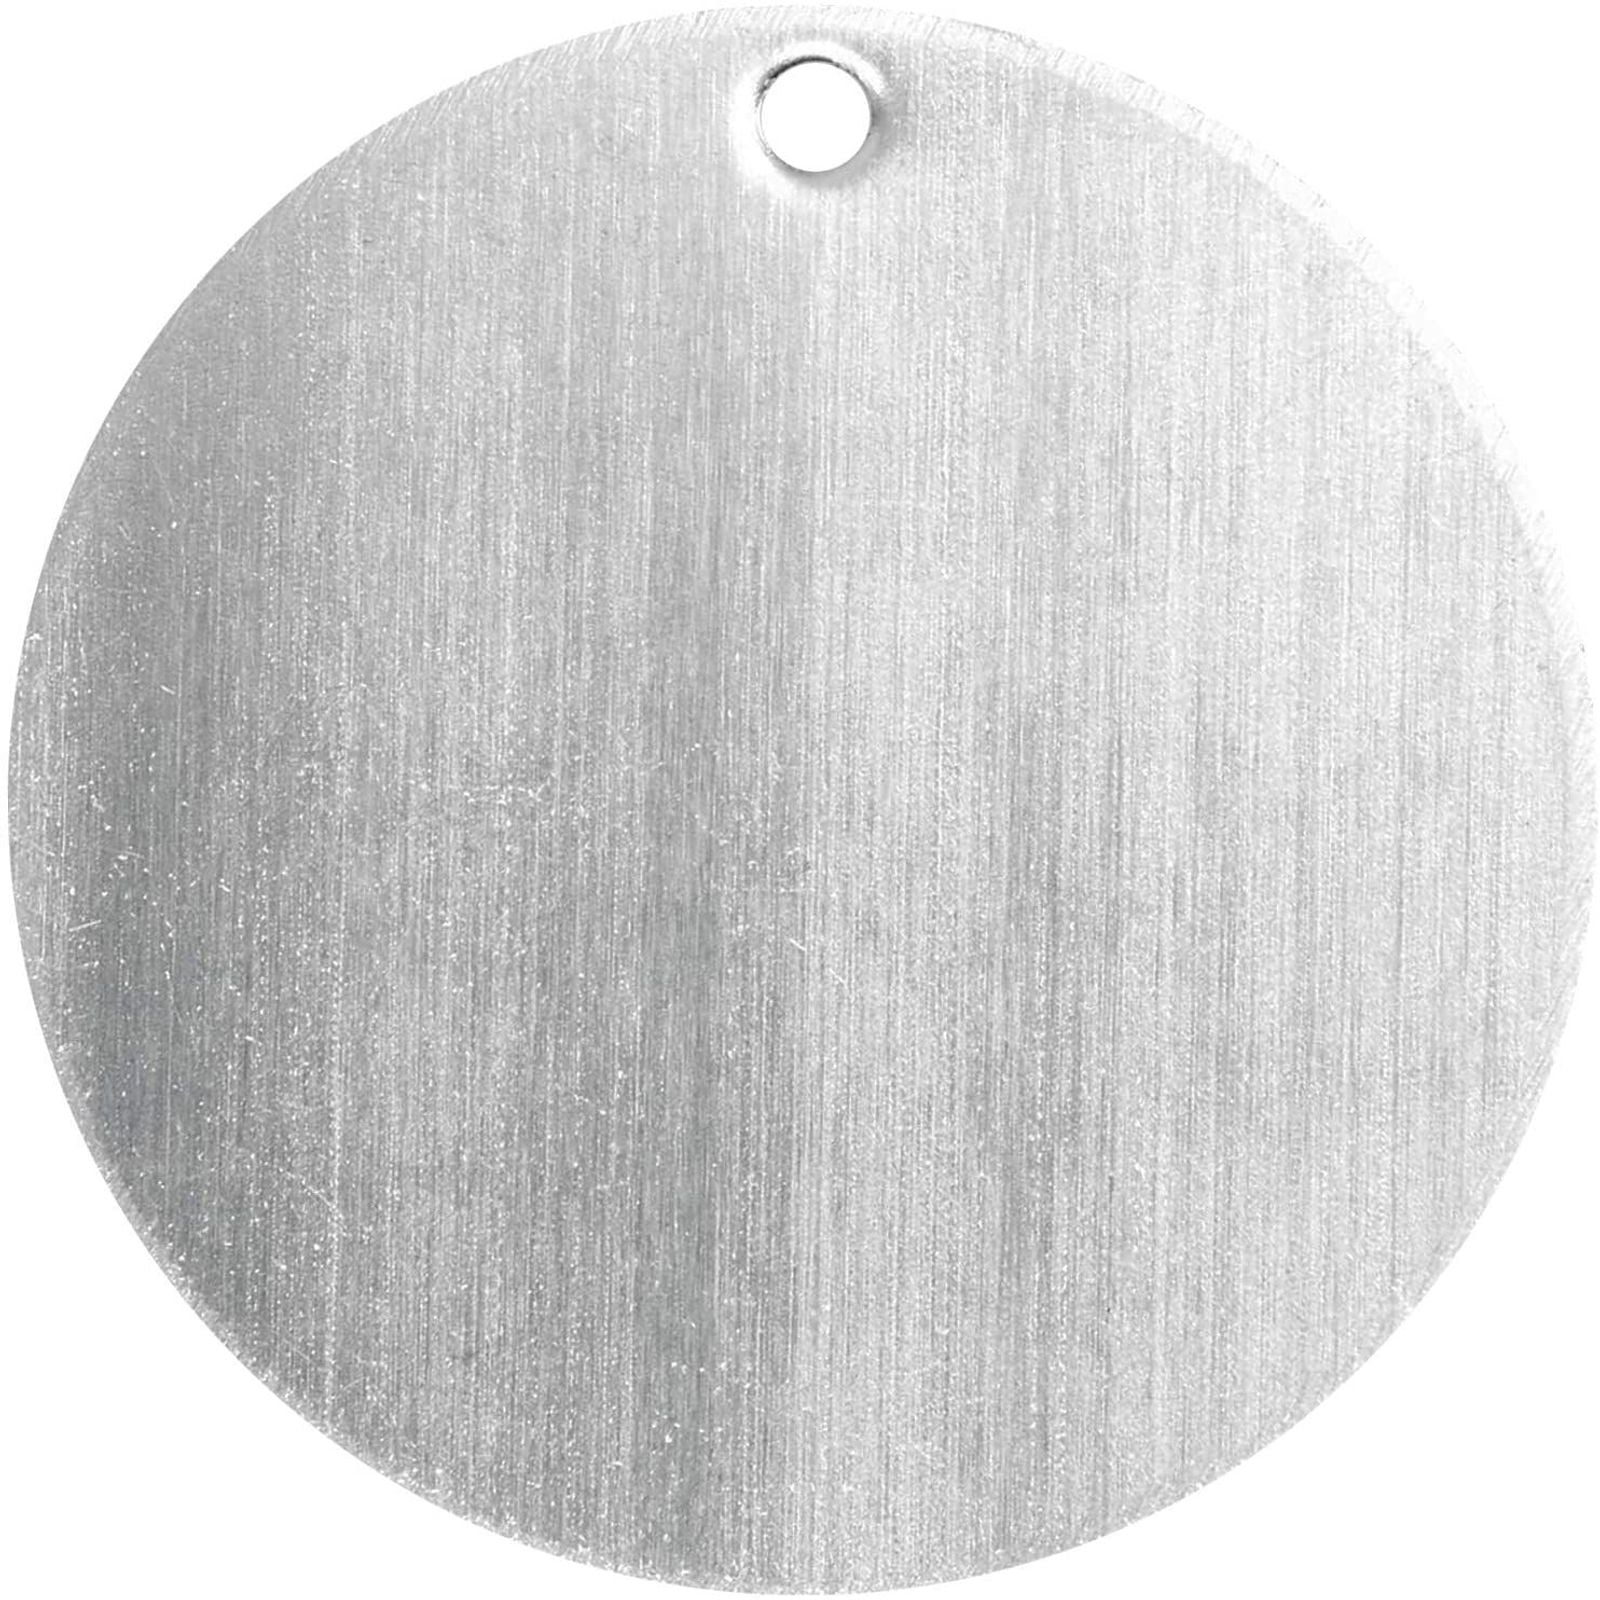 2 CIRCLE Brass Sheet Metal Stamping Blanks, no hole, 32mm (1-1/4) 18